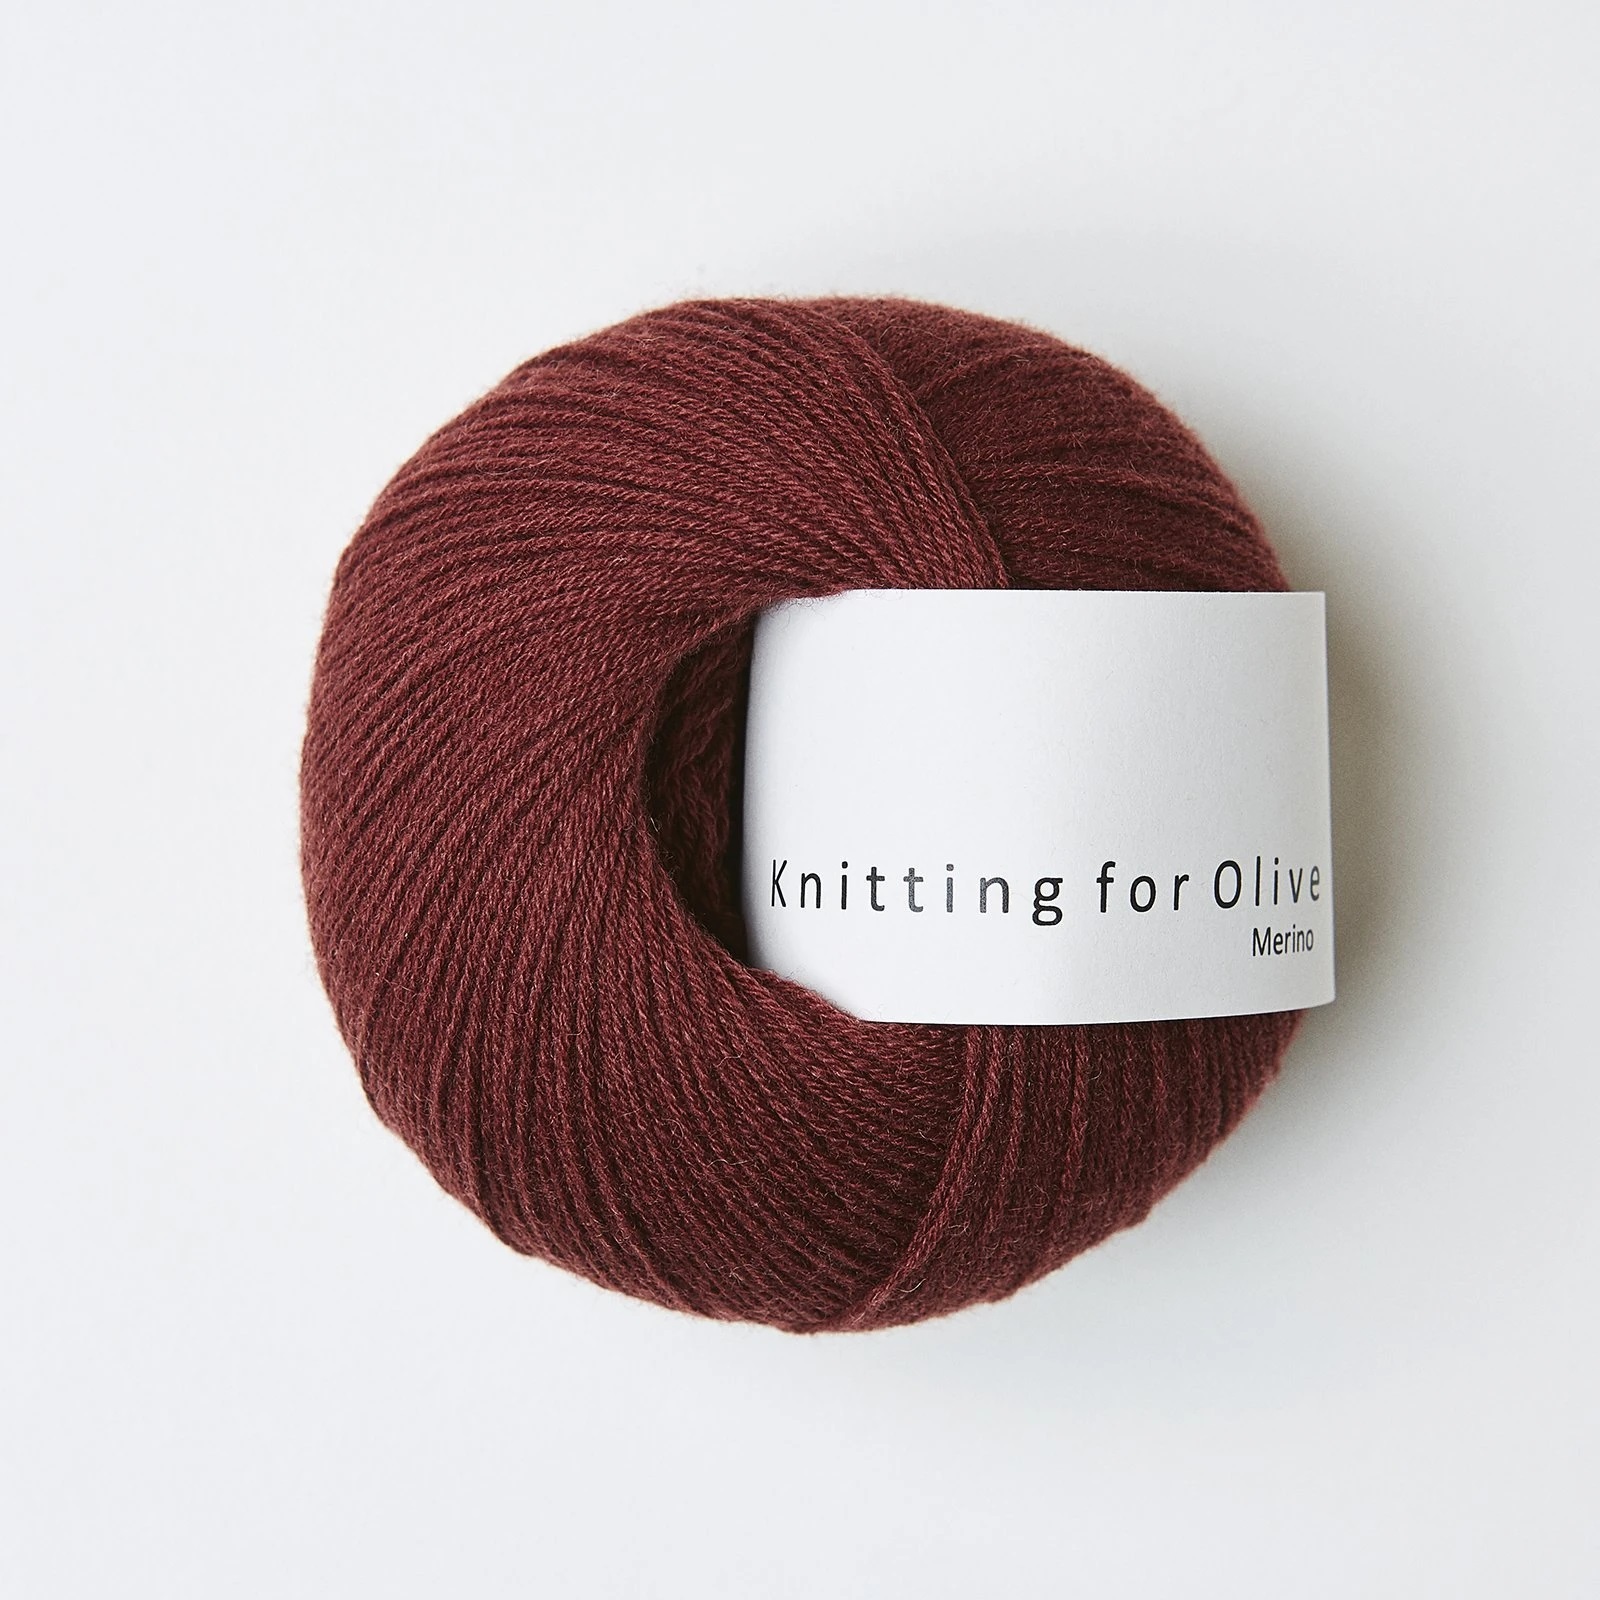 Knitting_for_olive_Merino_vinroed